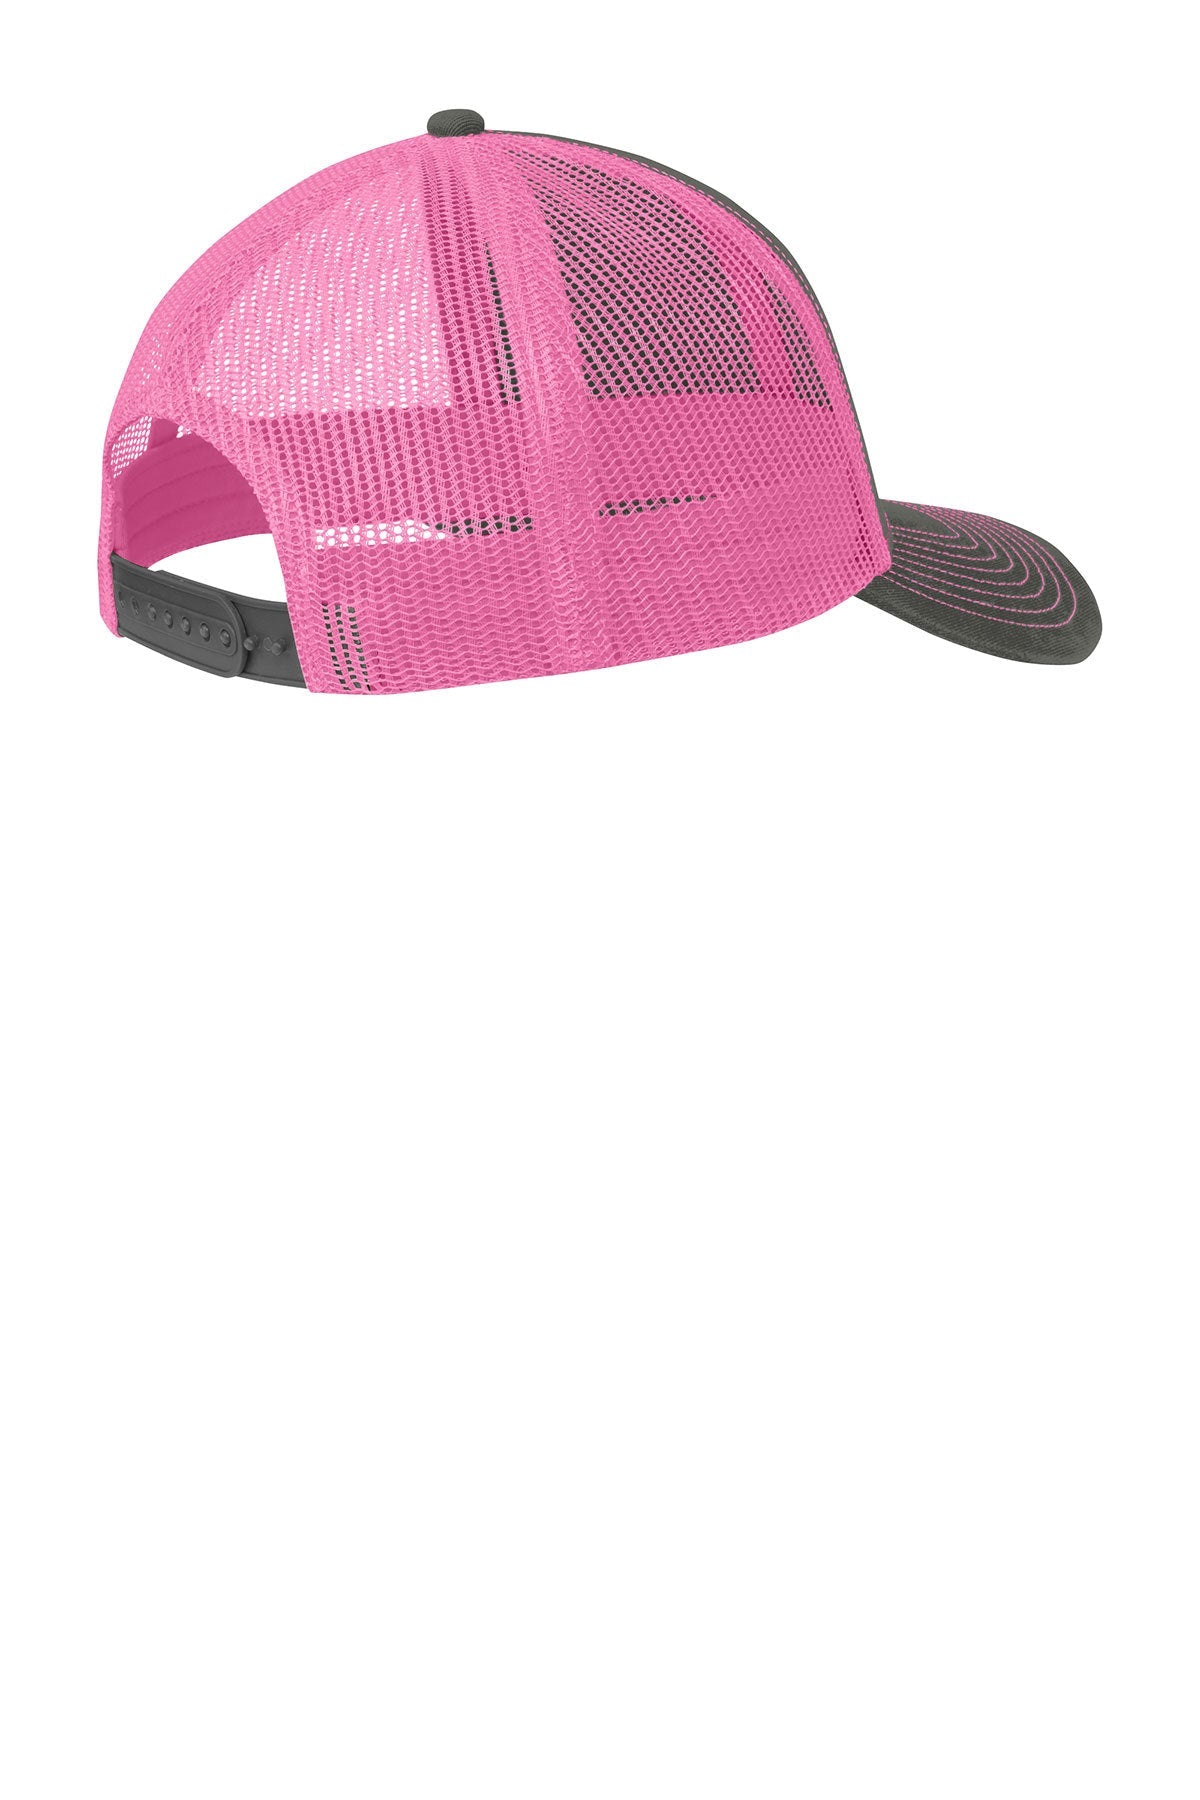 Port Authority Snapback Trucker Branded Caps, Grey Steel/ Neon Pink